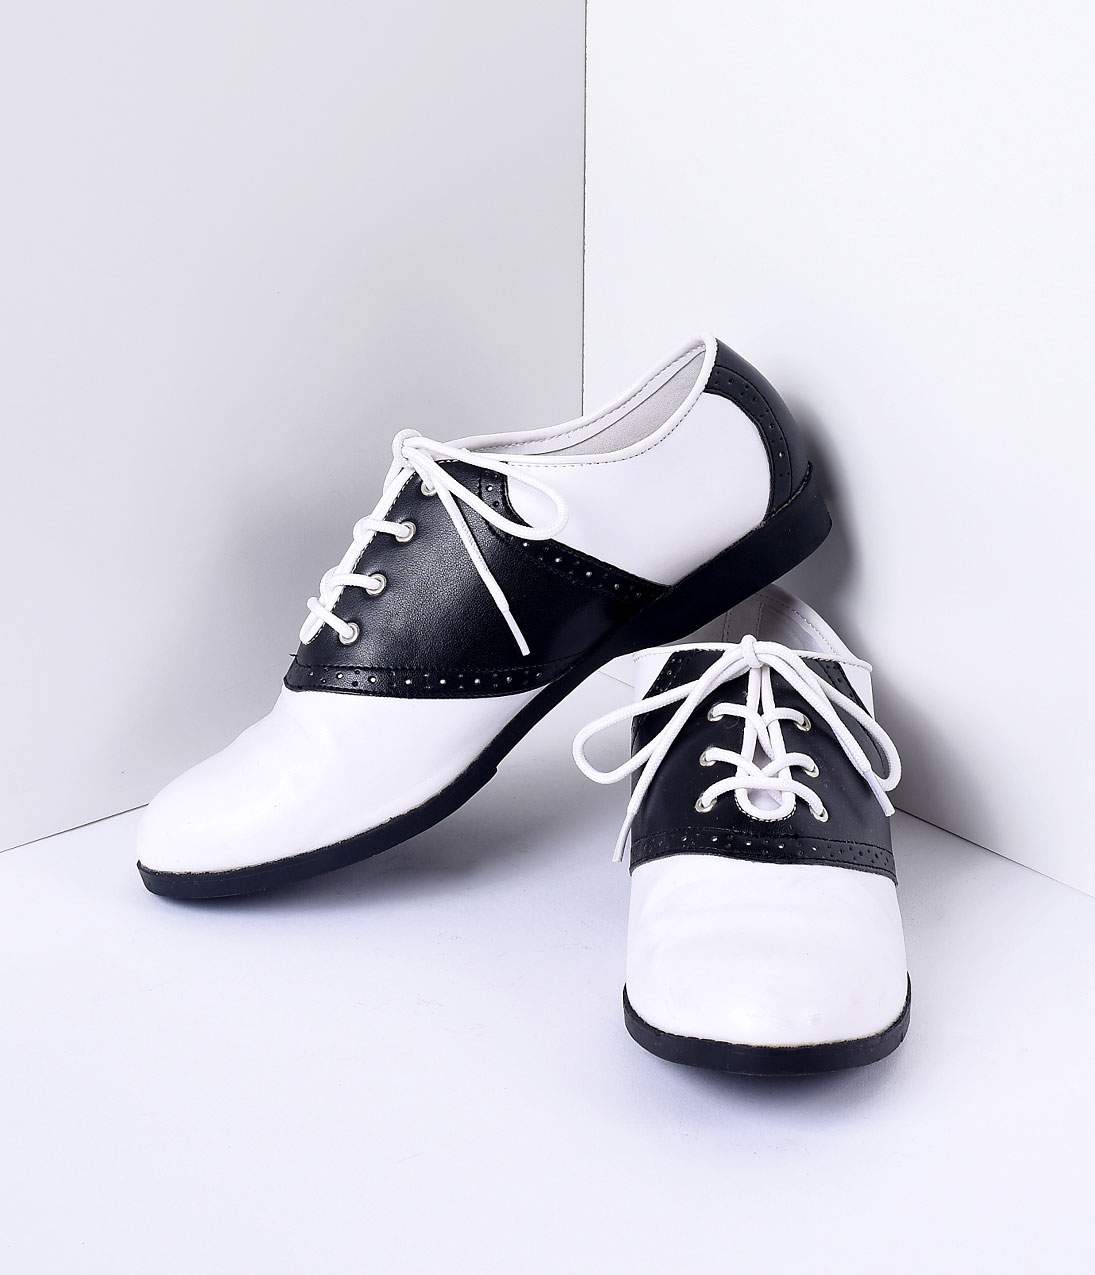 Black & White Classic Lace Up Saddle Shoes – Unique Vintage